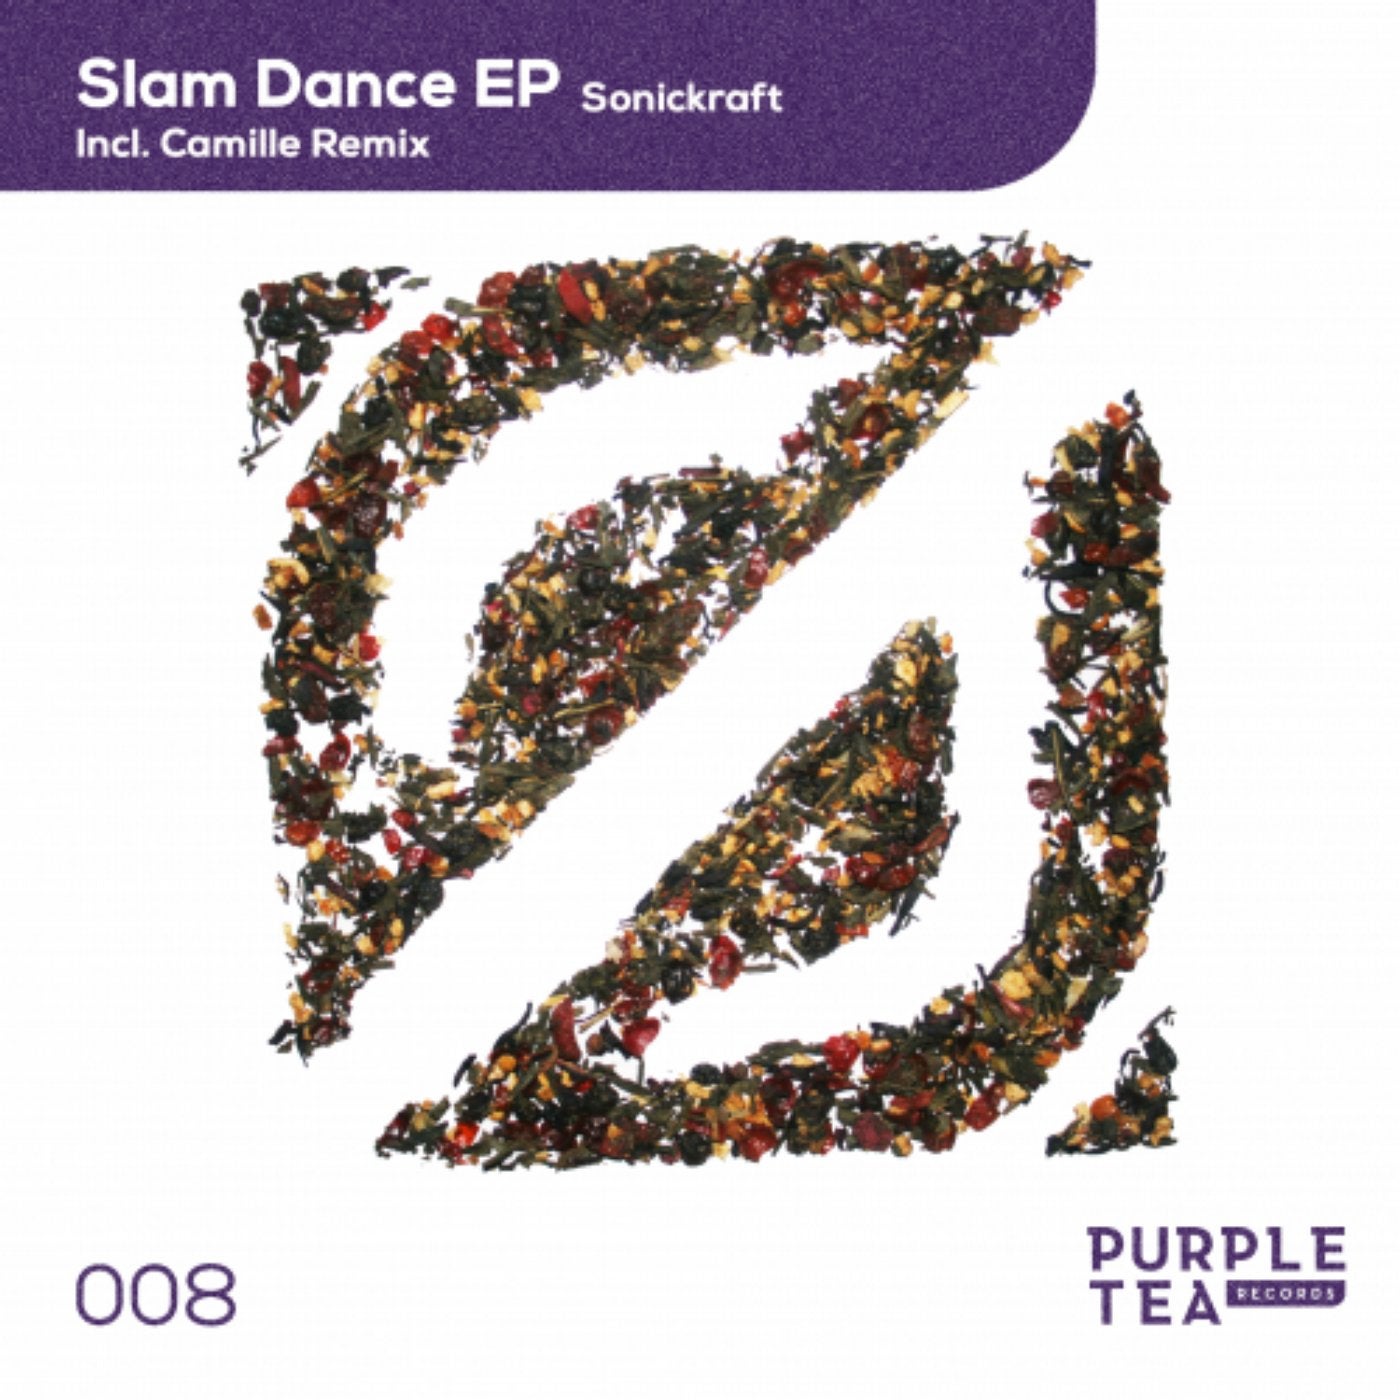 Slam Dance EP